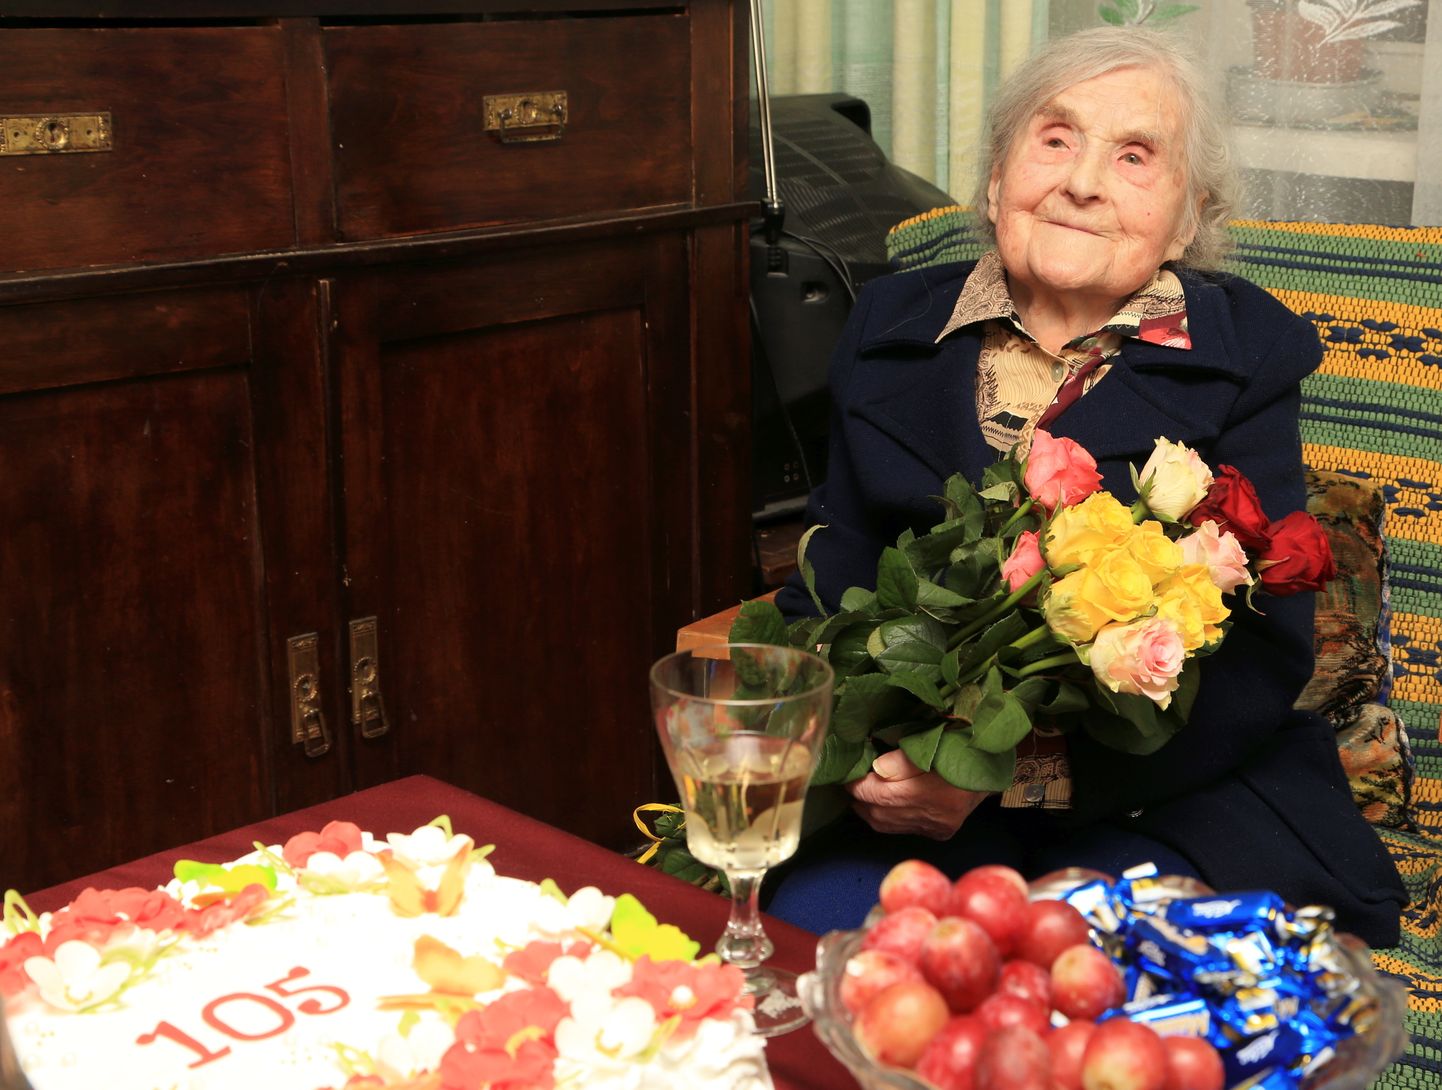 See pilt on tehtud mõni nädal vähem kui aasta tagasi, päeval, mil Hilda Paju tähistas 105. sünnipäeva.